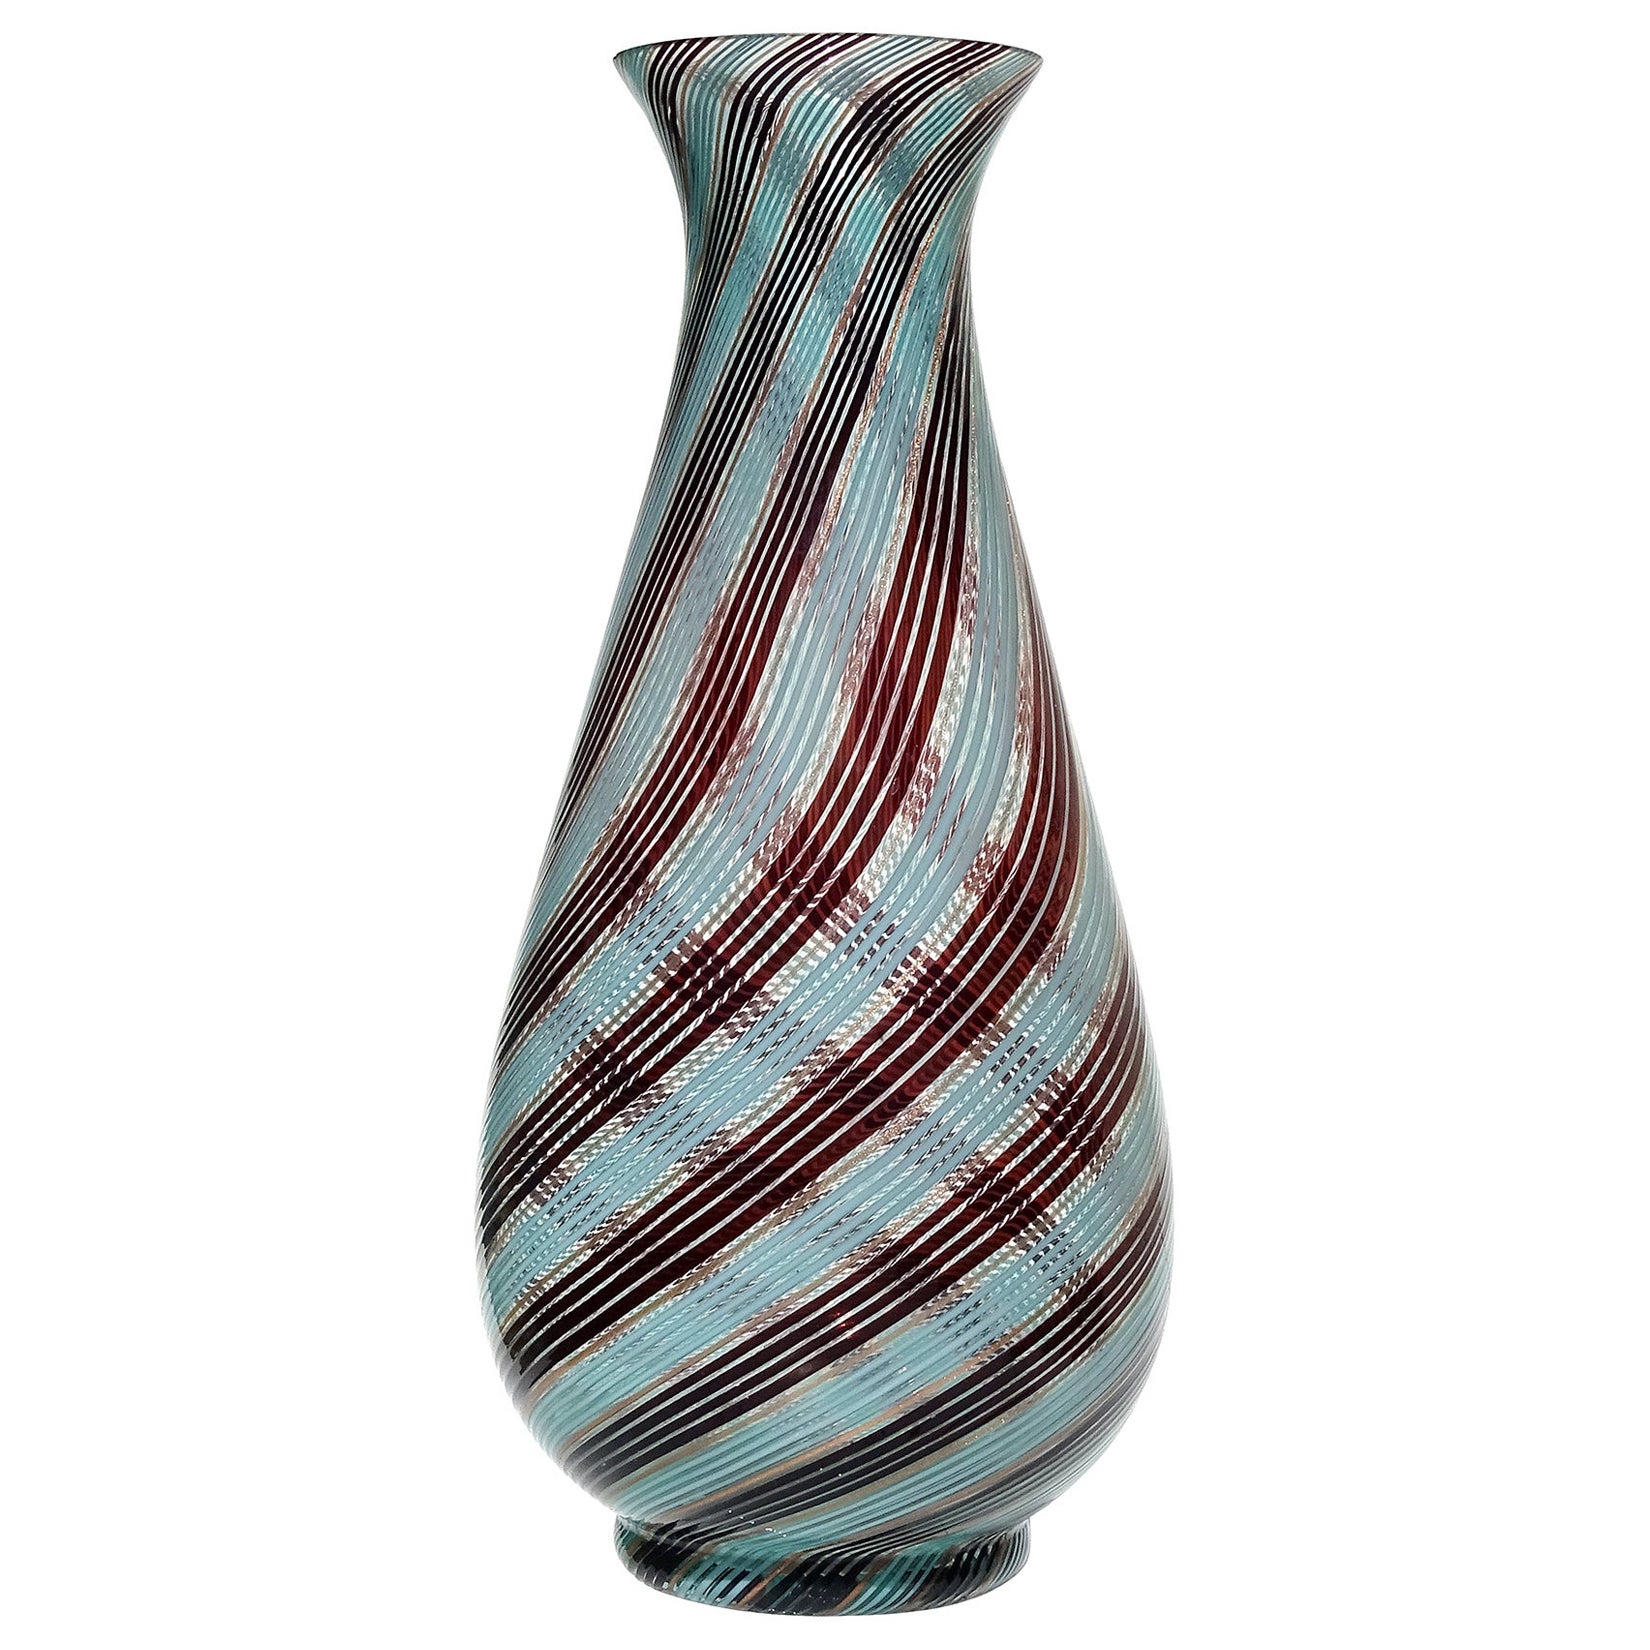 Dino Martens Murano Blue Black Copper Aventurine Italian Art Glass Flower Vase